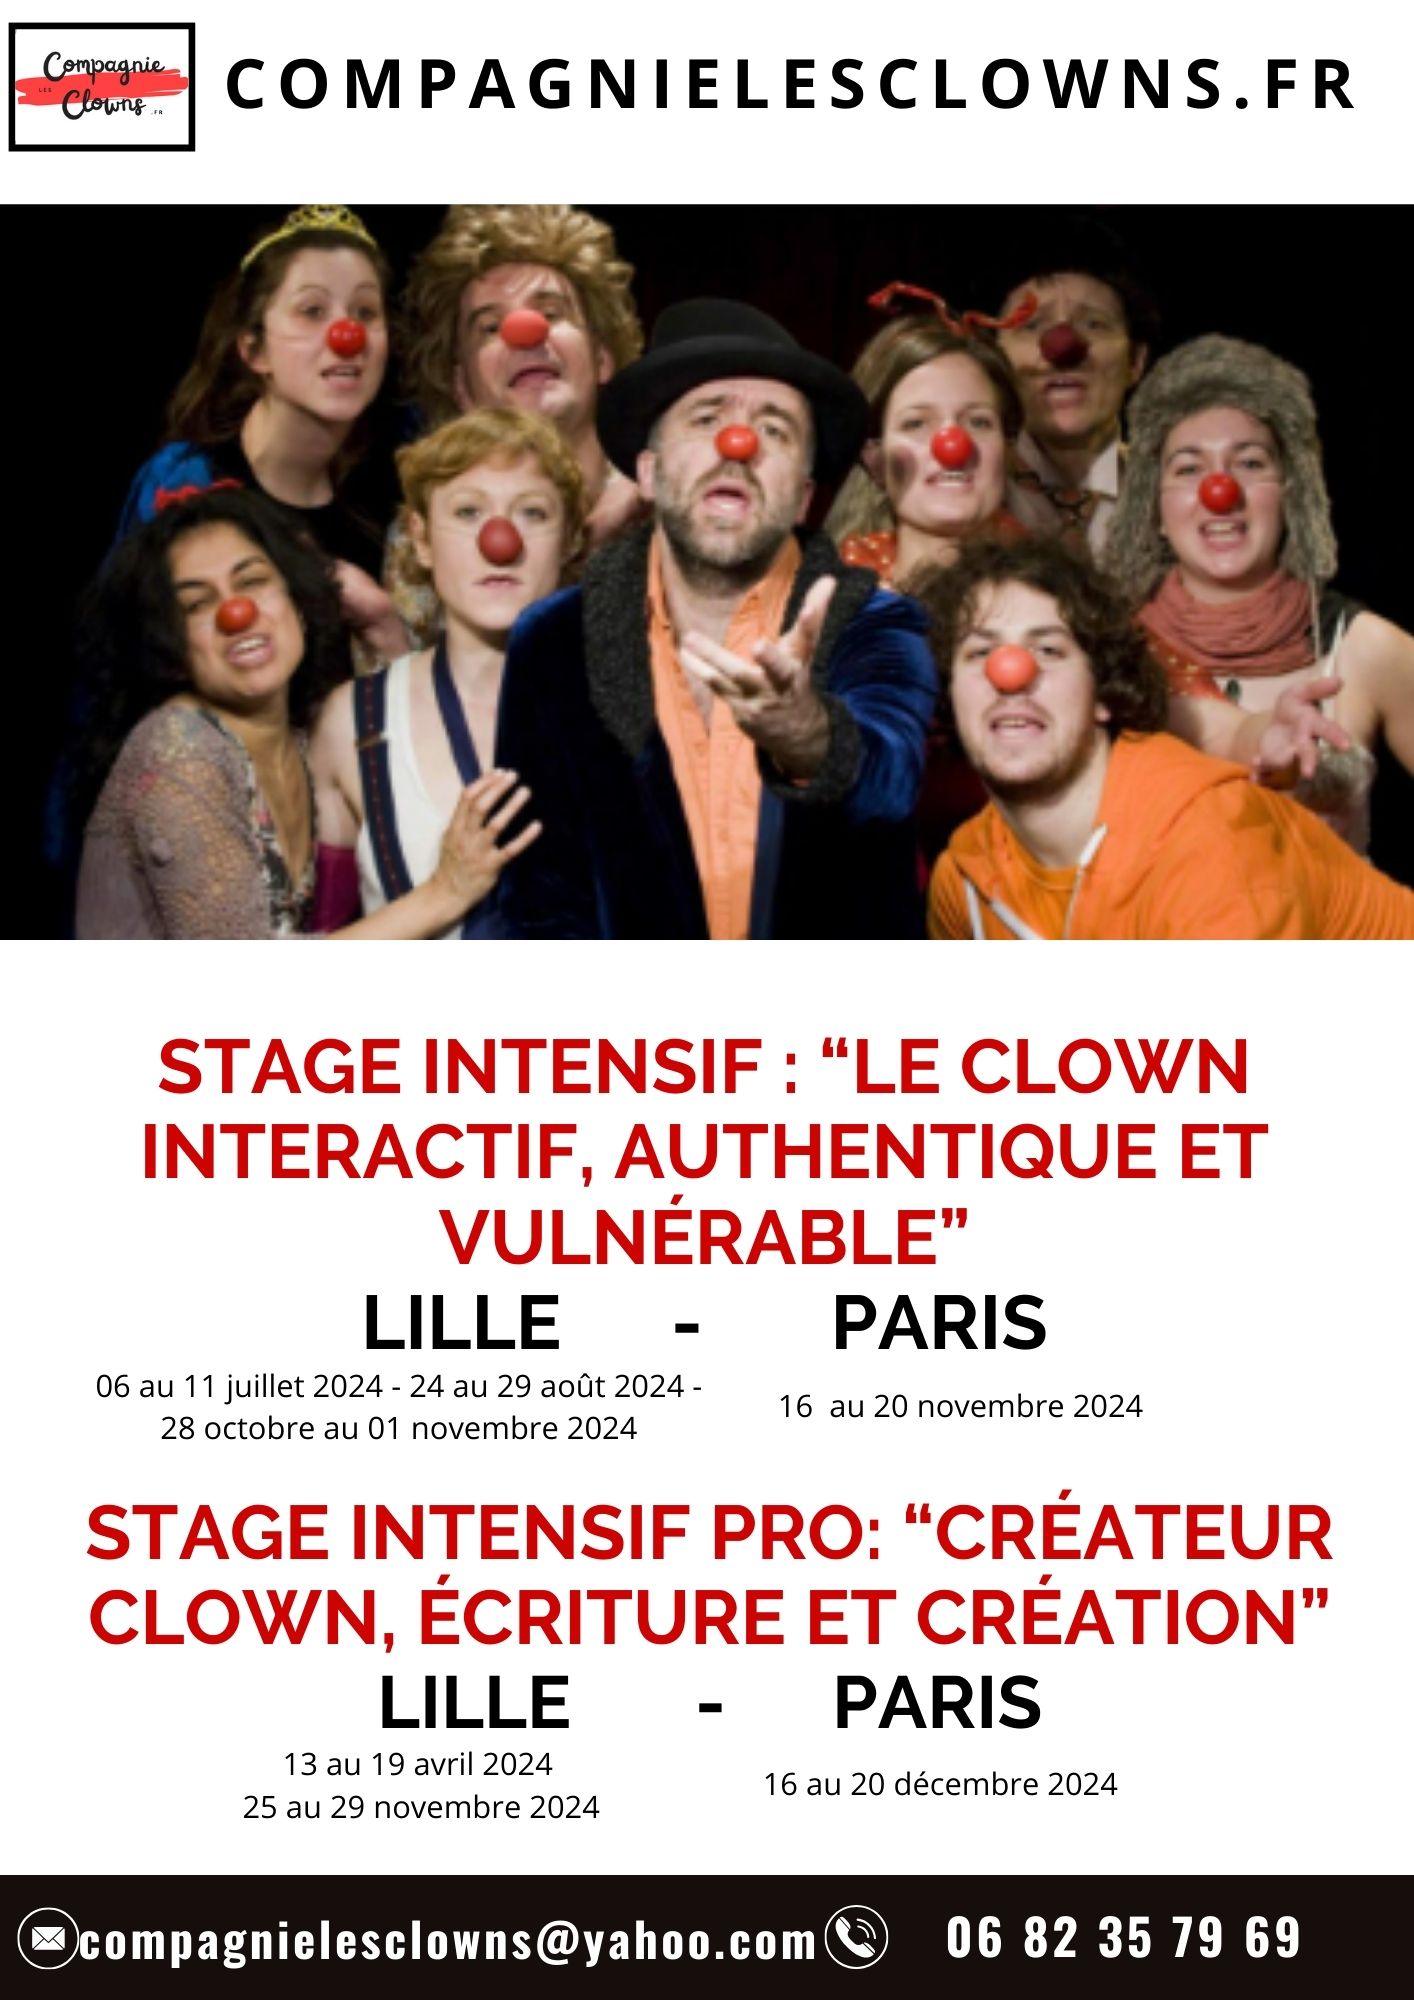 Intensif 1 : “Le clown interactif, authentique et vulnérable” 06/07/24 Lille